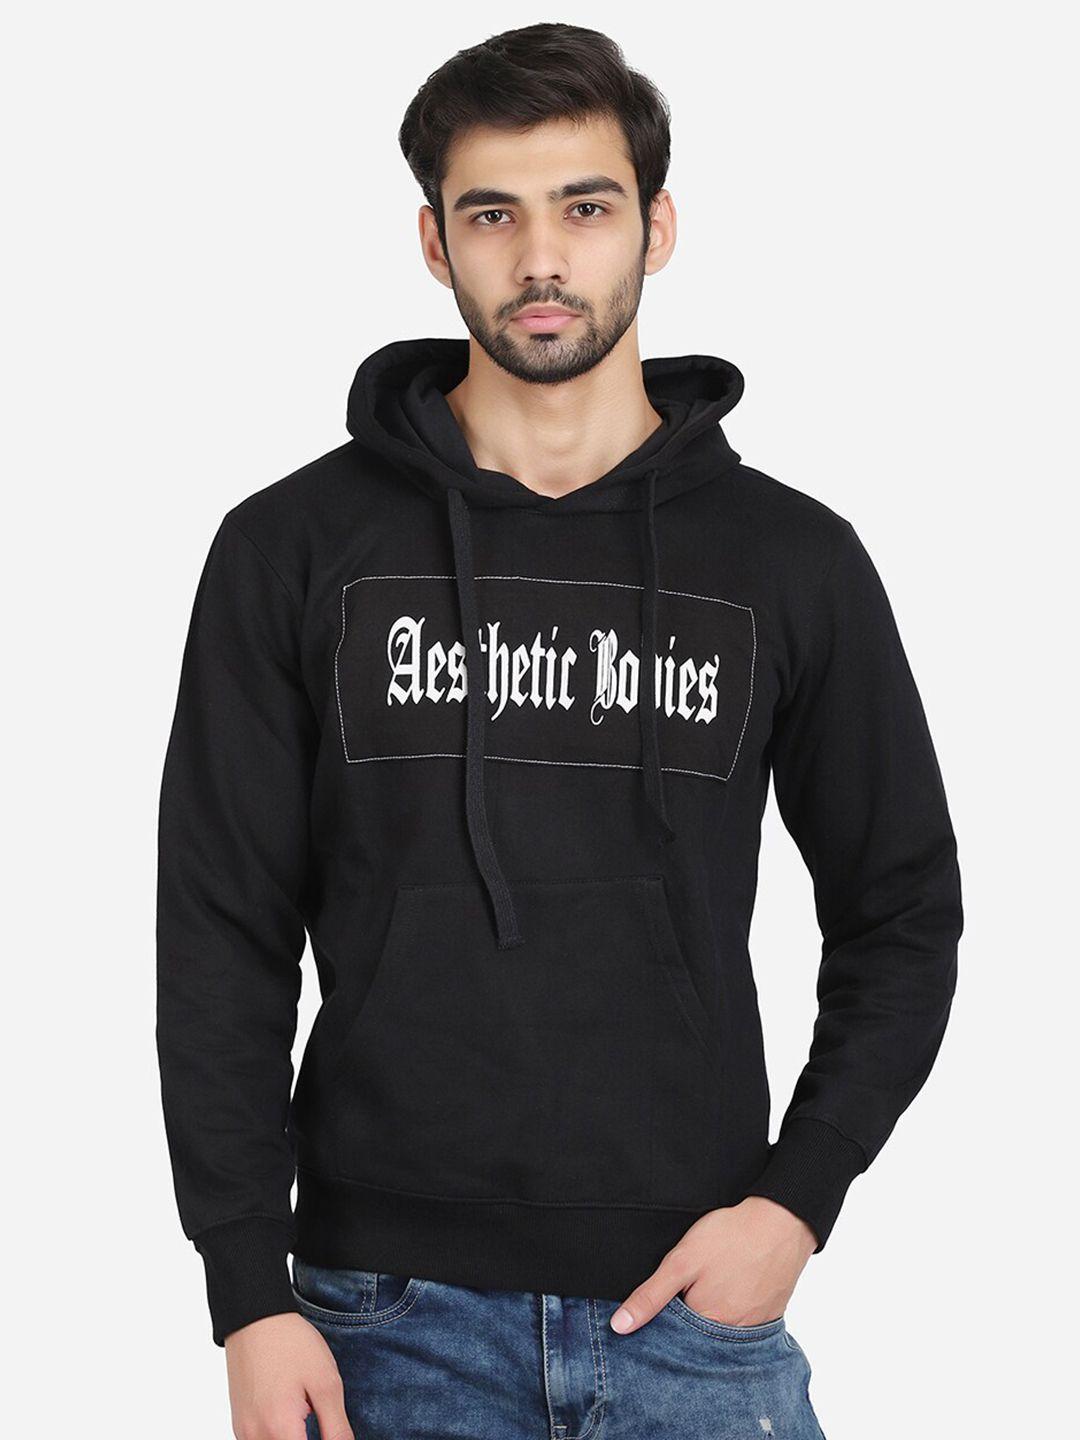 aesthetic bodies men black printed hooded sweatshirt